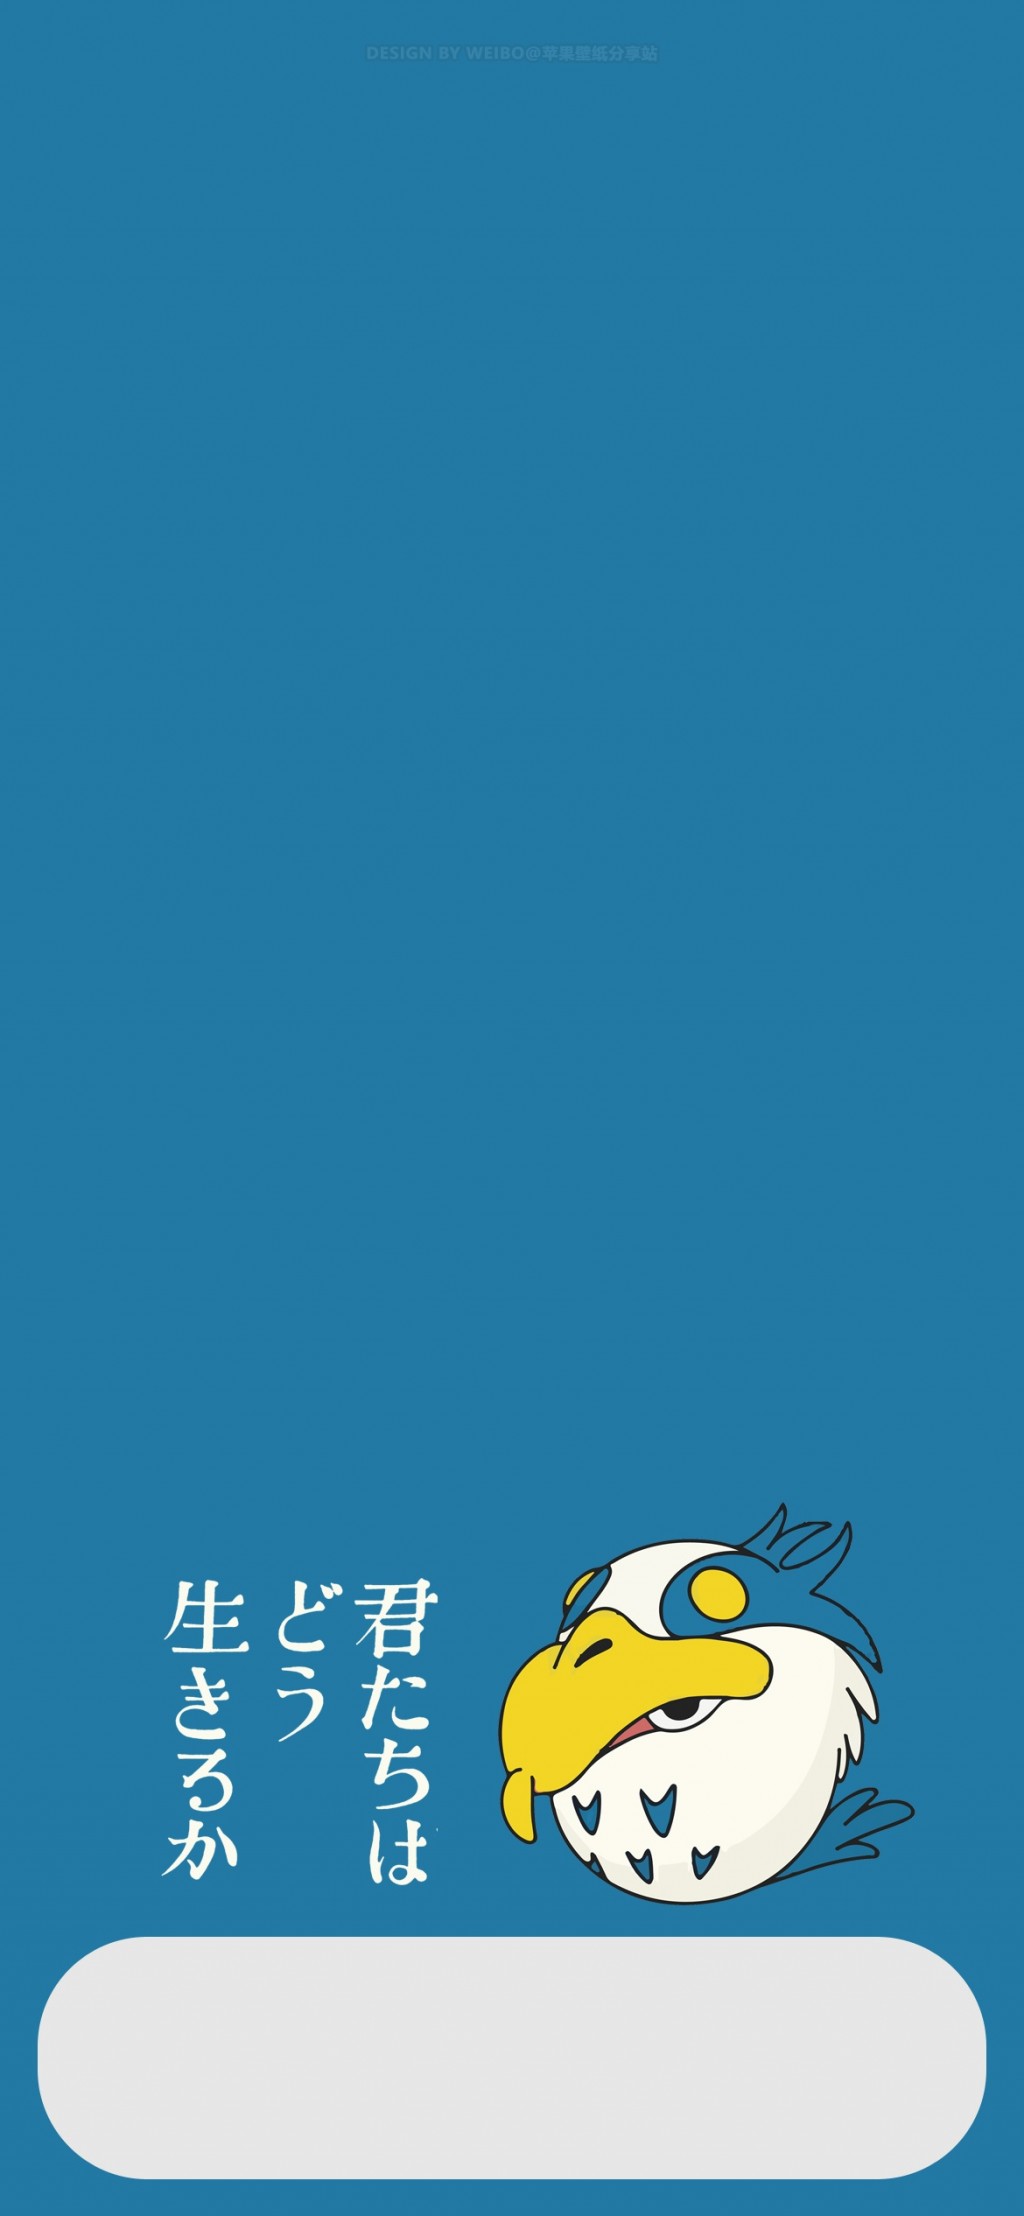 宫崎骏新作《你想活出怎样的人生》动画电影海报手机壁纸